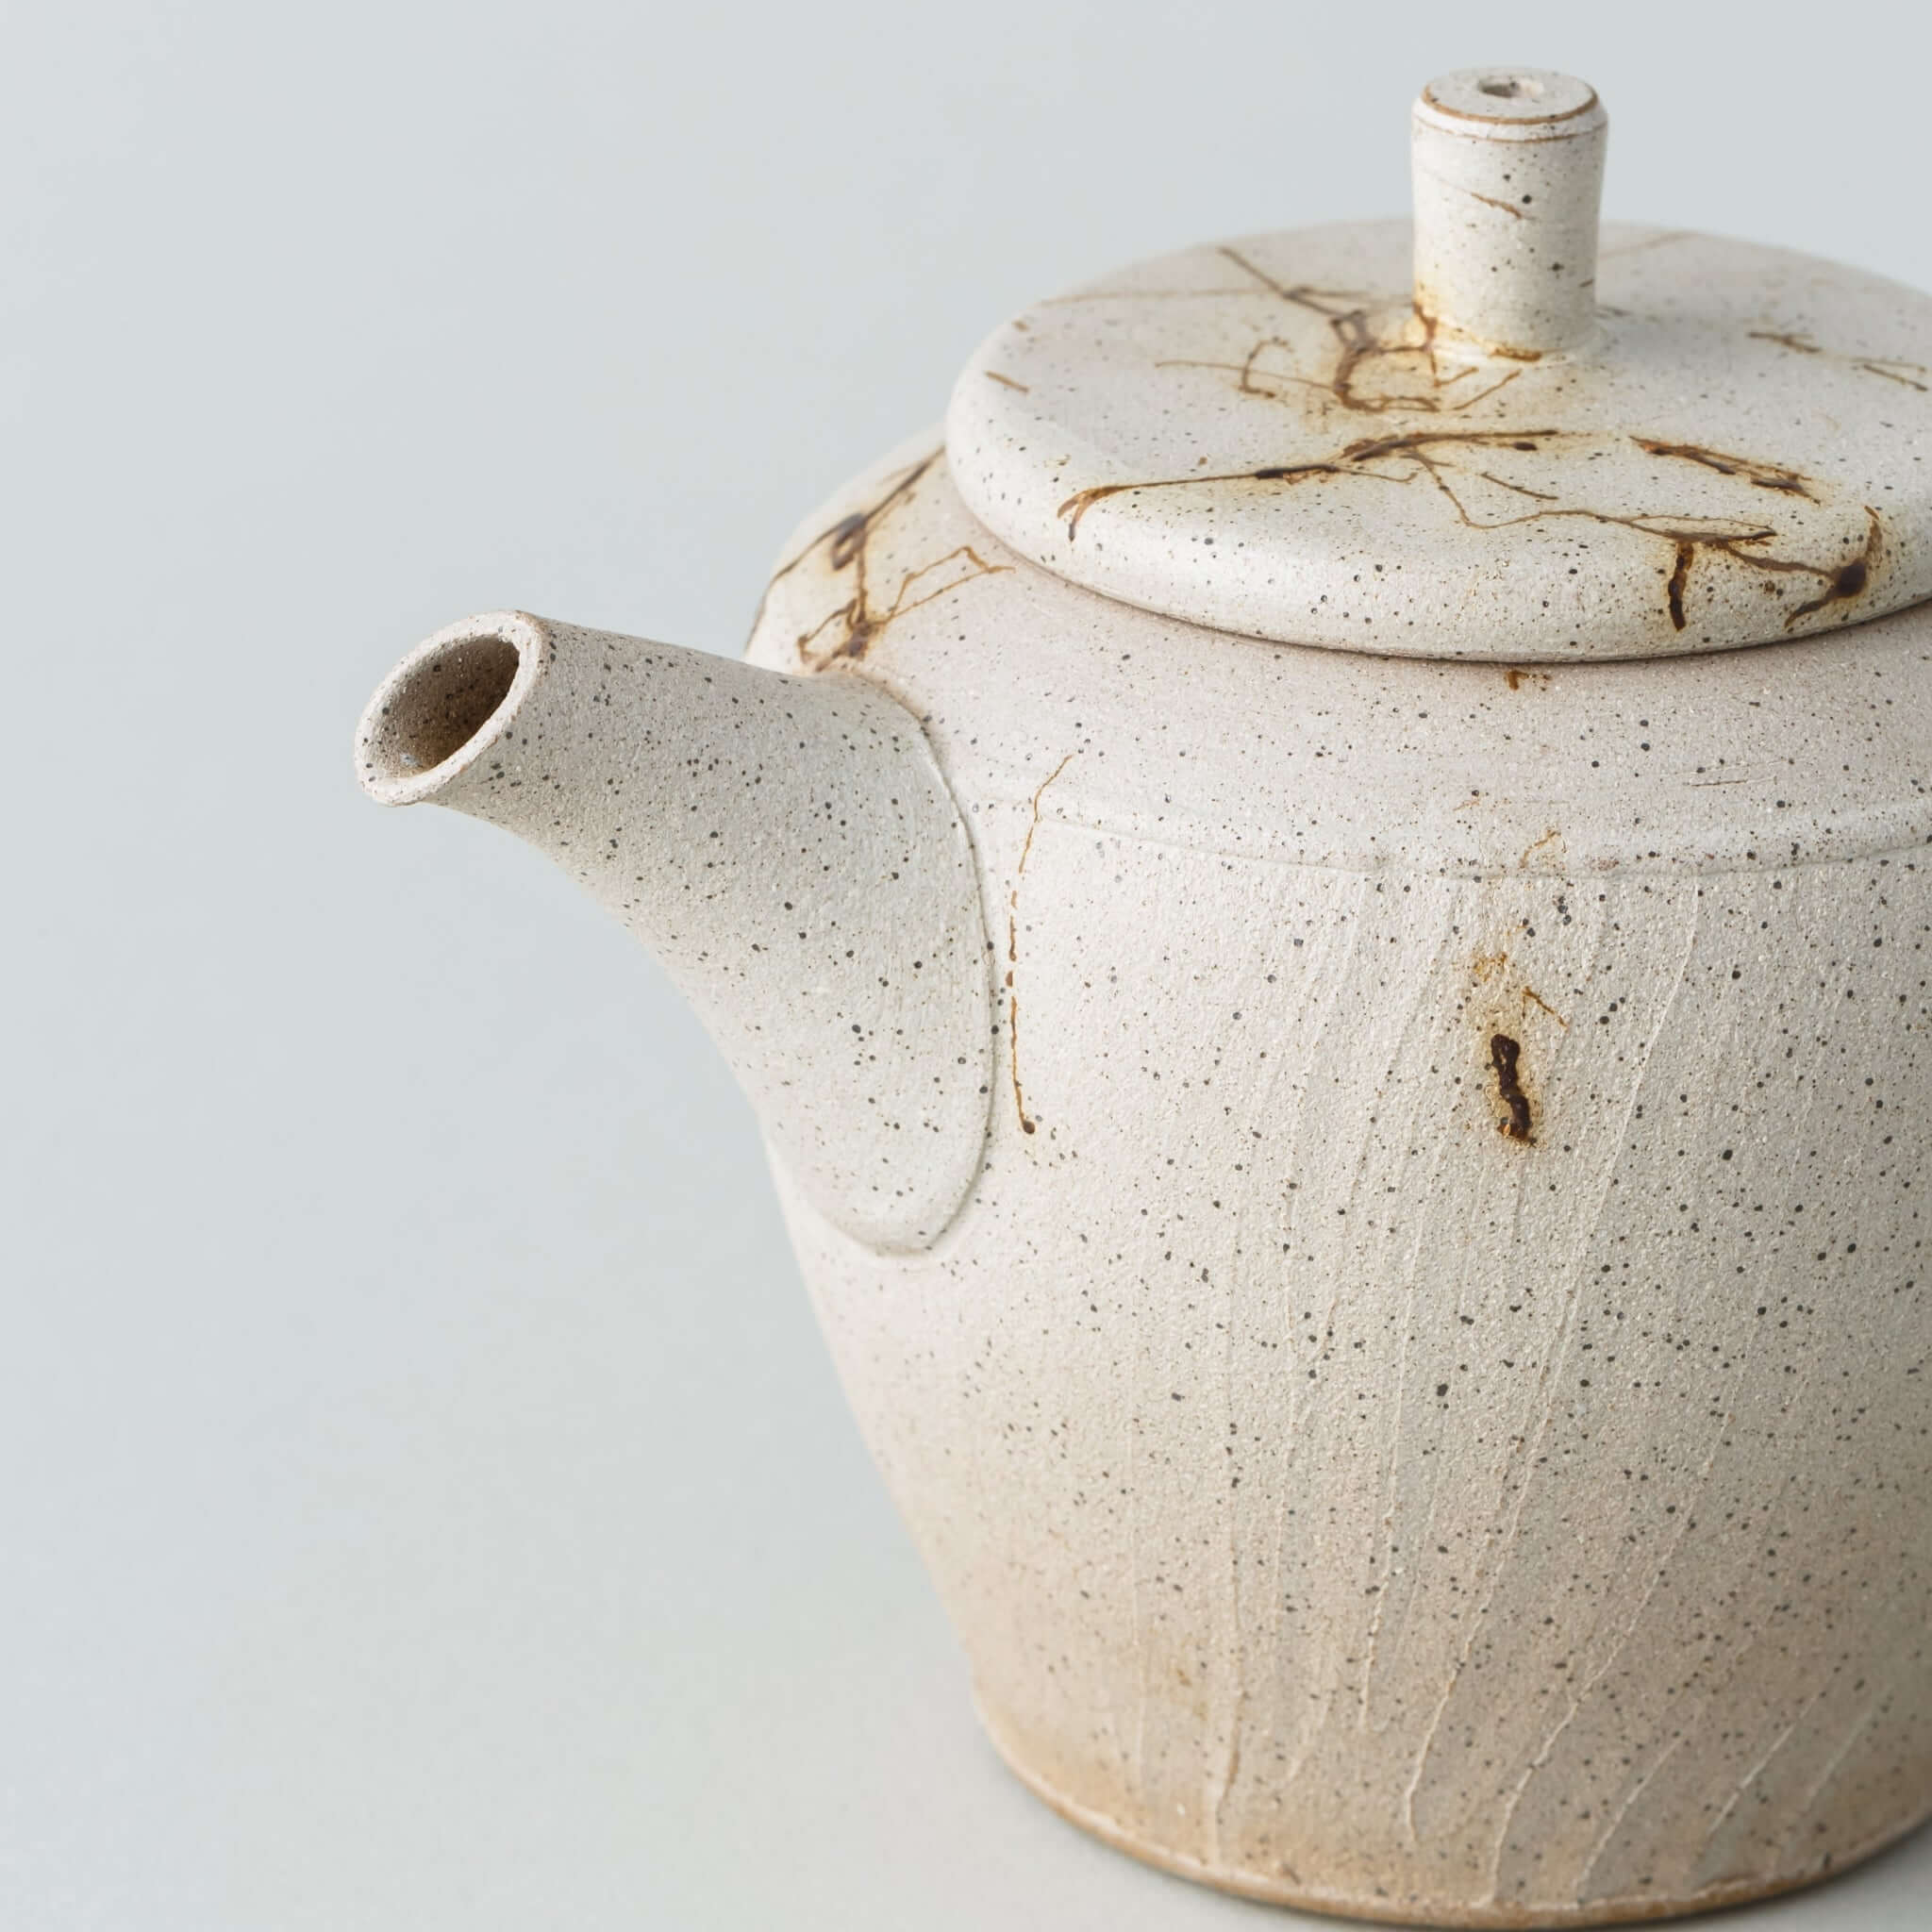 急須・茶壺の仕覆セット ギフト・海外土産にもおすすめ – 煎茶 中国茶 